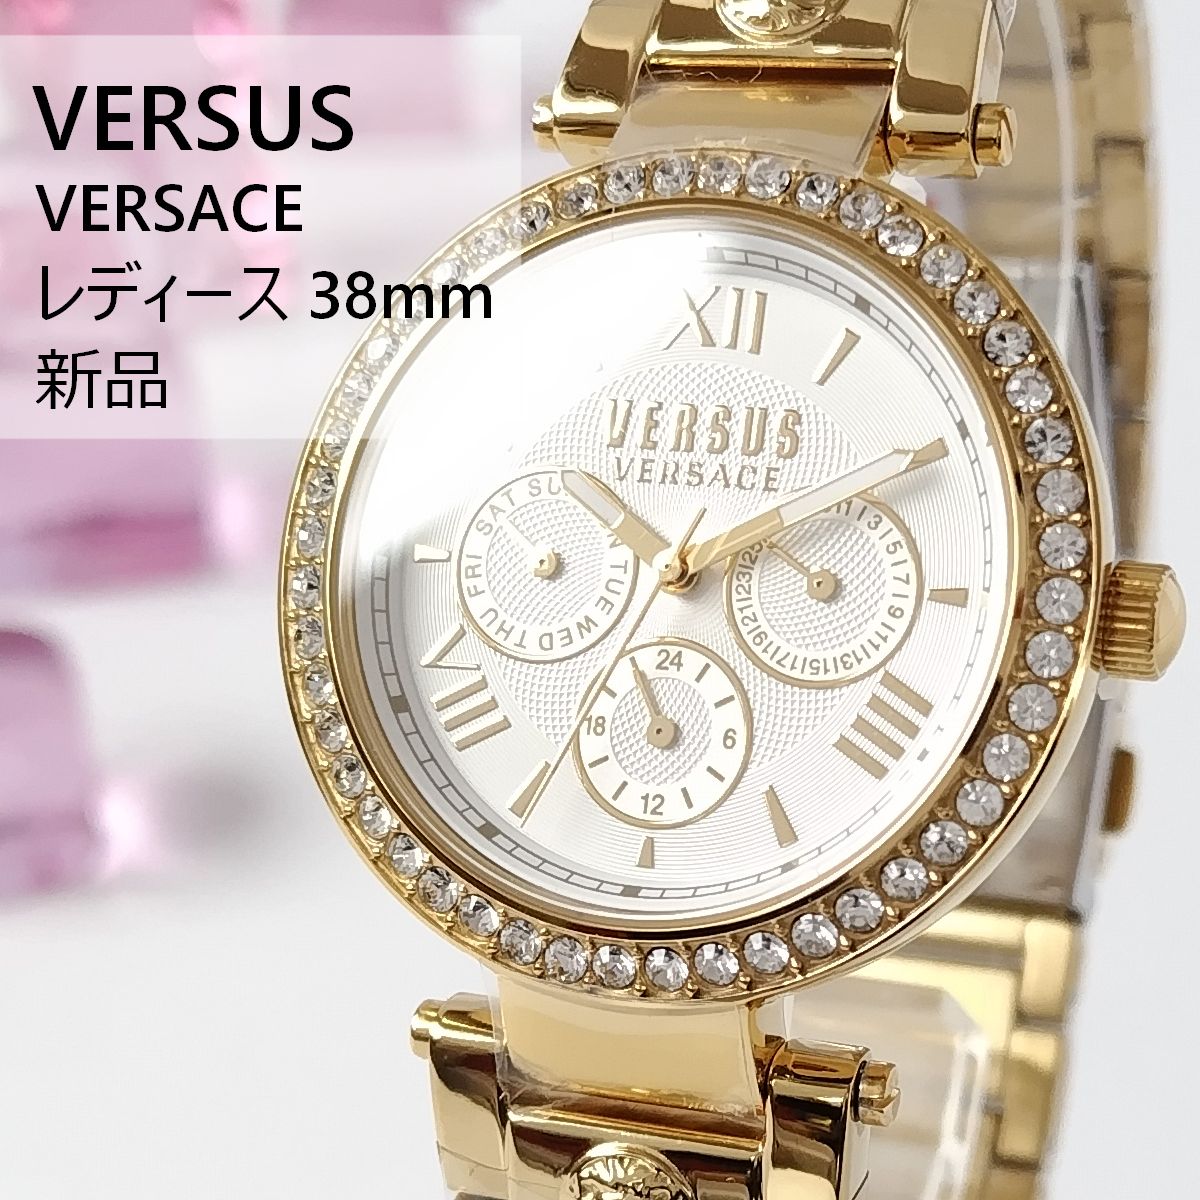 ゴールドバンド/ホワイト新品レディス腕時計VERSUS VERSACEヴェルサス 